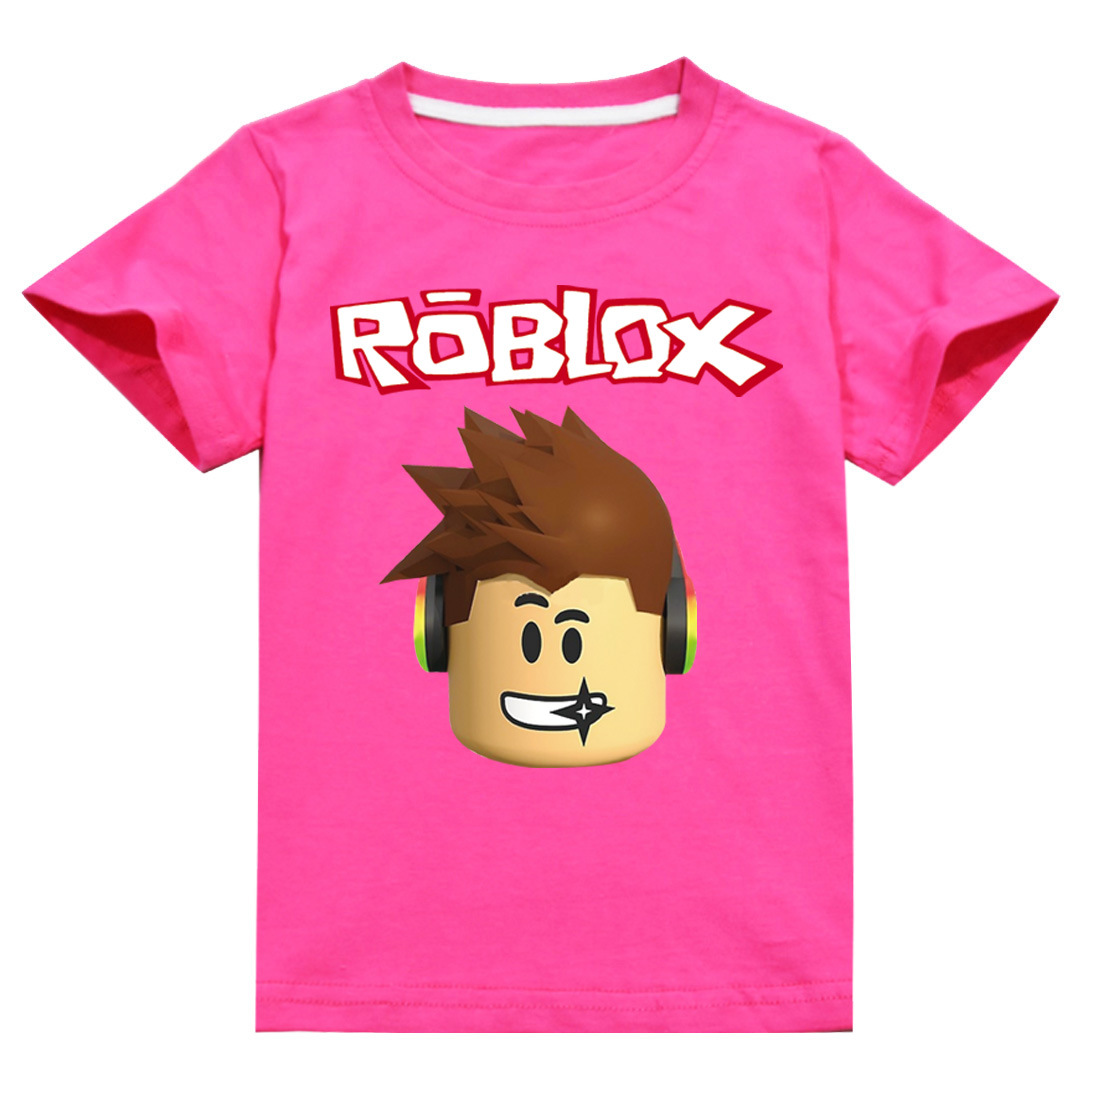 Áo thun Roblox: Hãy khám phá mẫu áo thun Roblox đầy phong cách và độc đáo này! Với nhiều màu sắc và hình ảnh bắt mắt, áo Roblox sẽ giúp bạn thể hiện phong cách cá nhân cùng đam mê game của mình. Xem ngay hình ảnh để chọn cho mình chiếc áo ưng ý nhất!